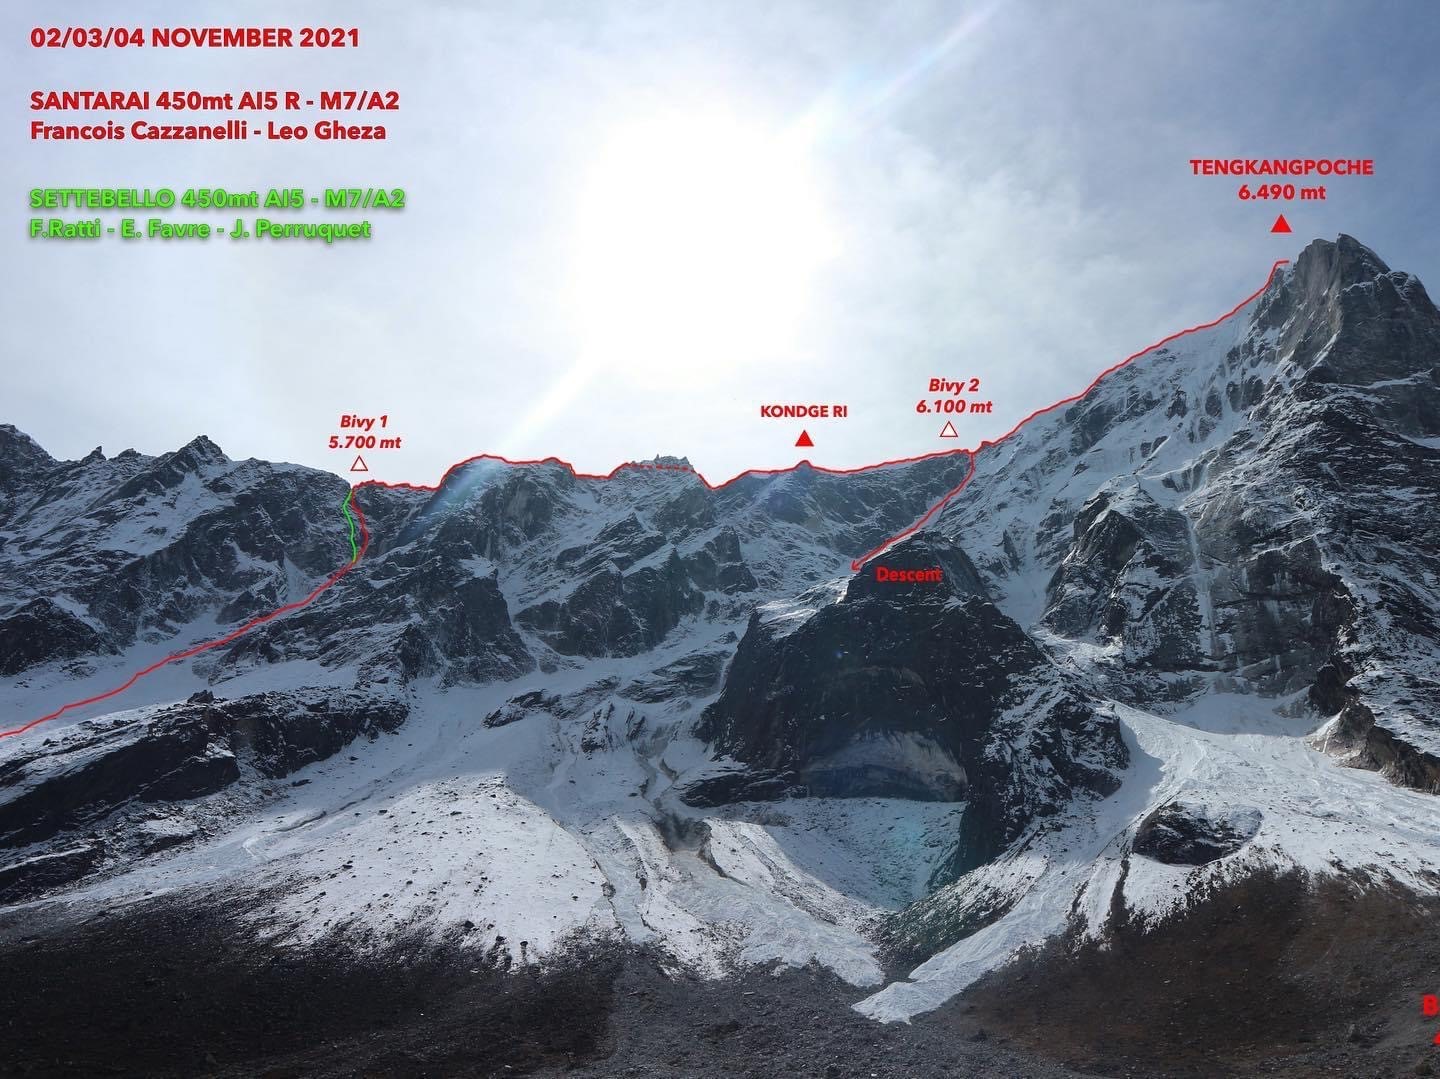 Итальянские альпинисты открывают два новых маршрута на северной стене пика Конгде-Ри (Kongde RI, 6187 метров)